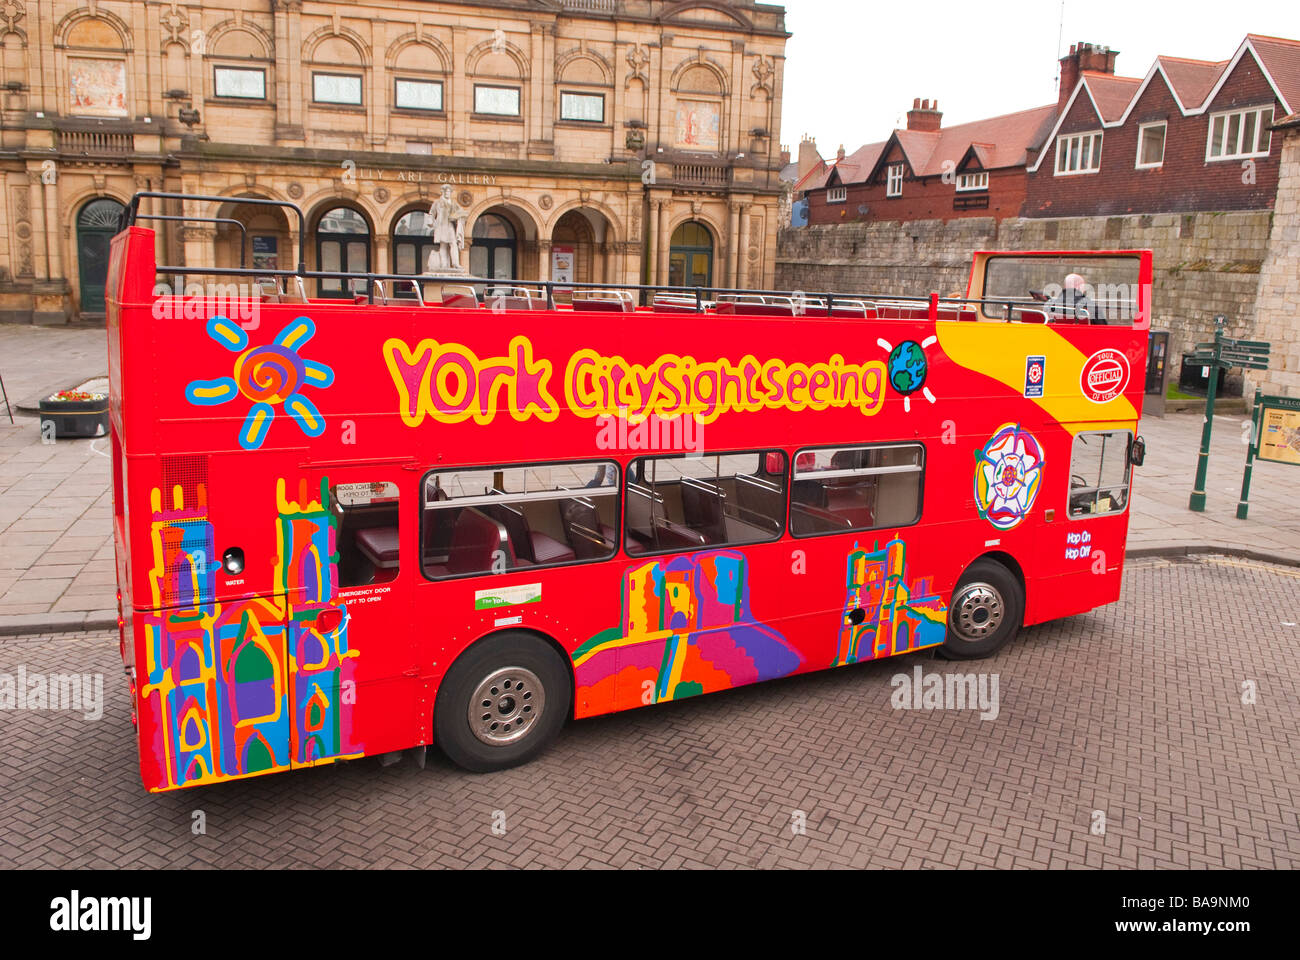 Un rosso york citysightseeing tour open top double decker bus utilizzato per dare ai turisti passeggiate intorno alla città di York,Yorkshire, Regno Unito Foto Stock